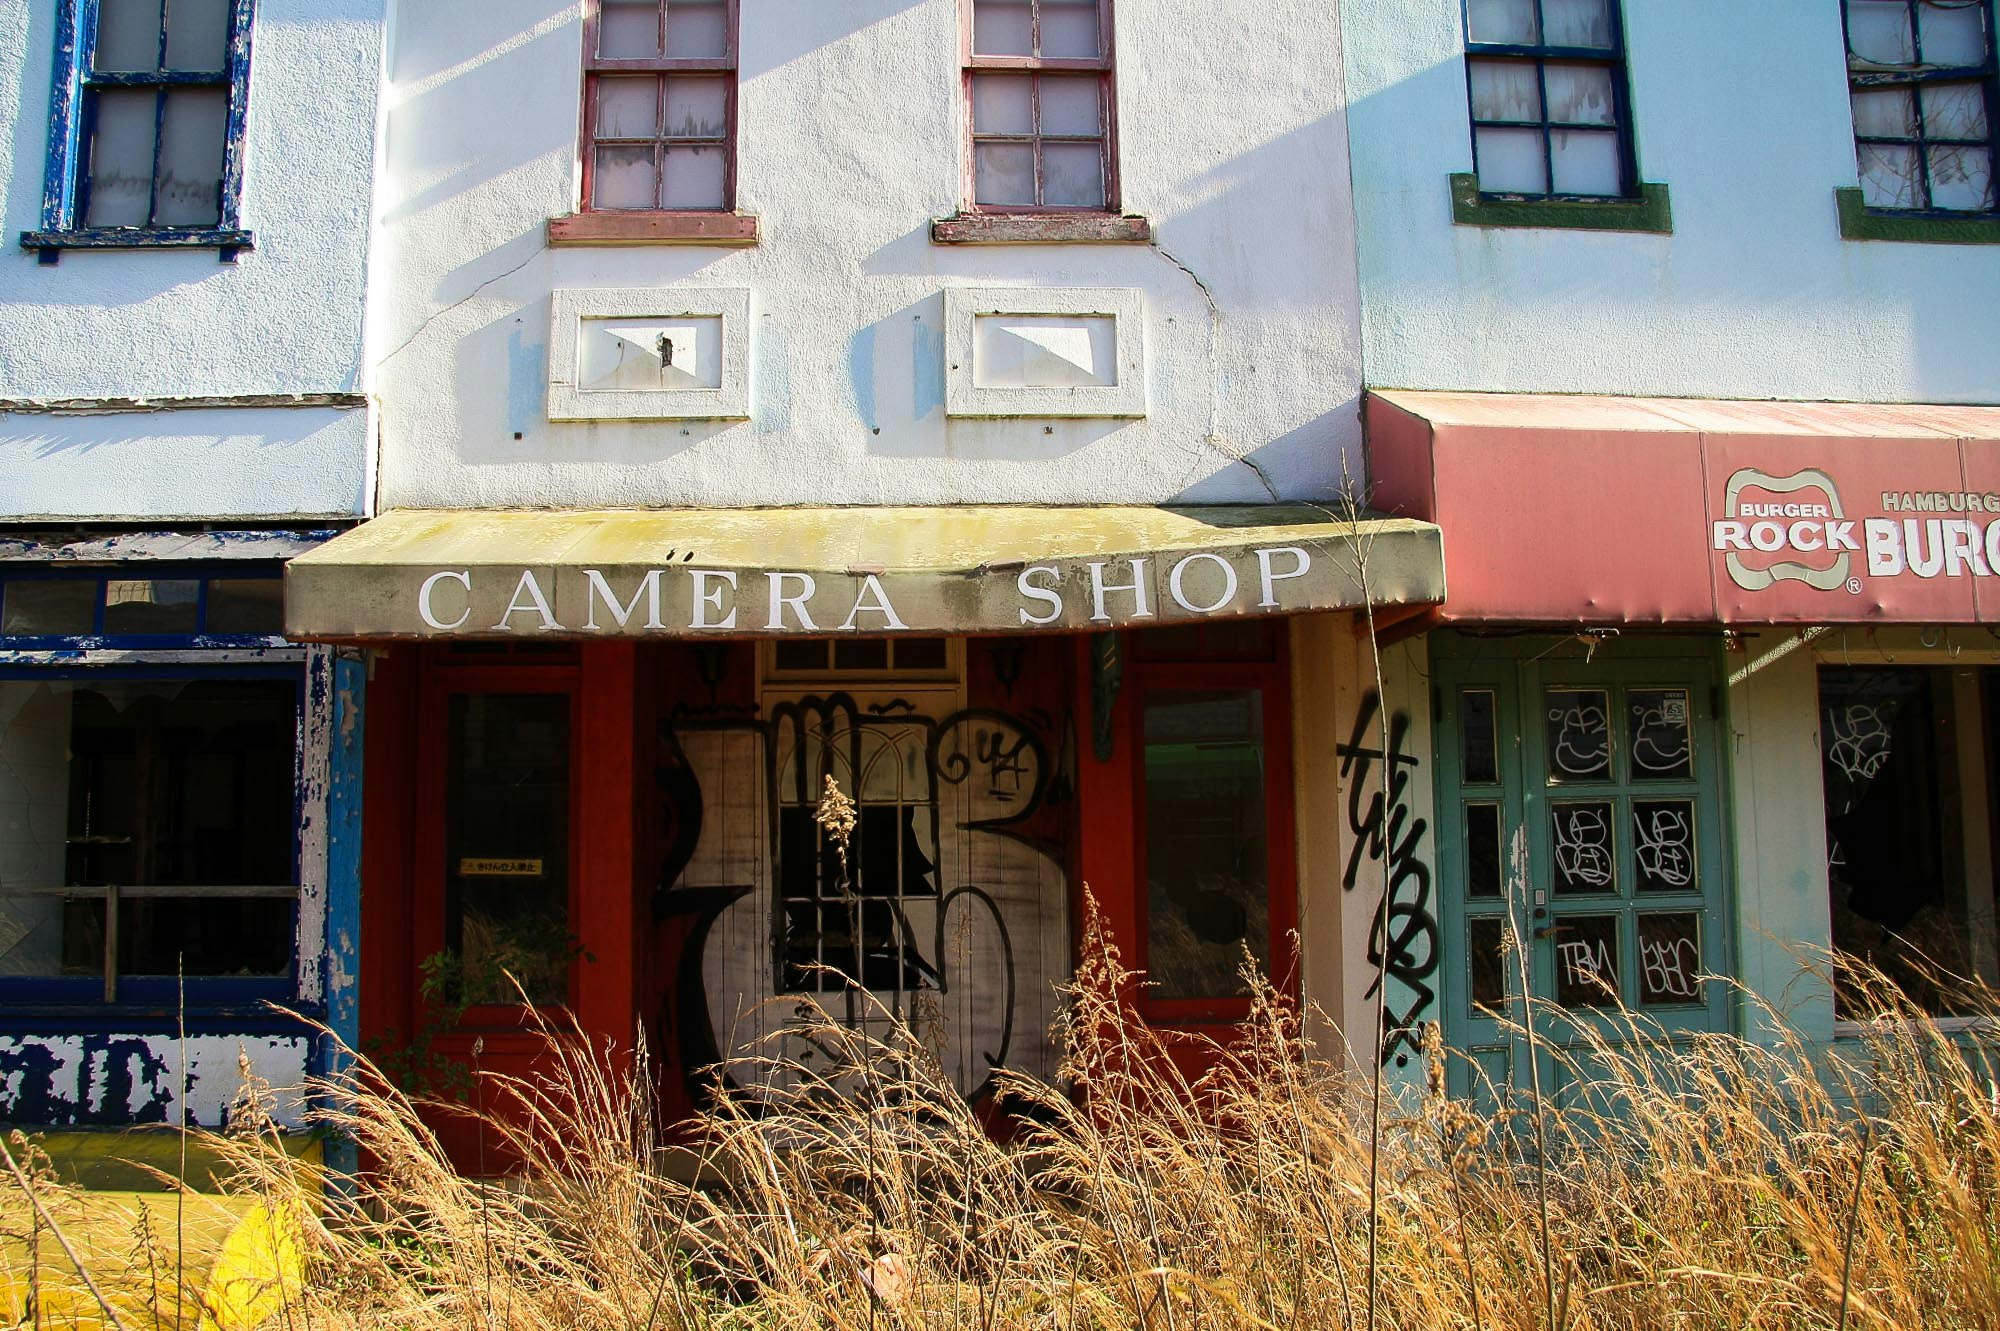 An abandoned camera shop at Nara Dreamland amusement park in Nara Japan